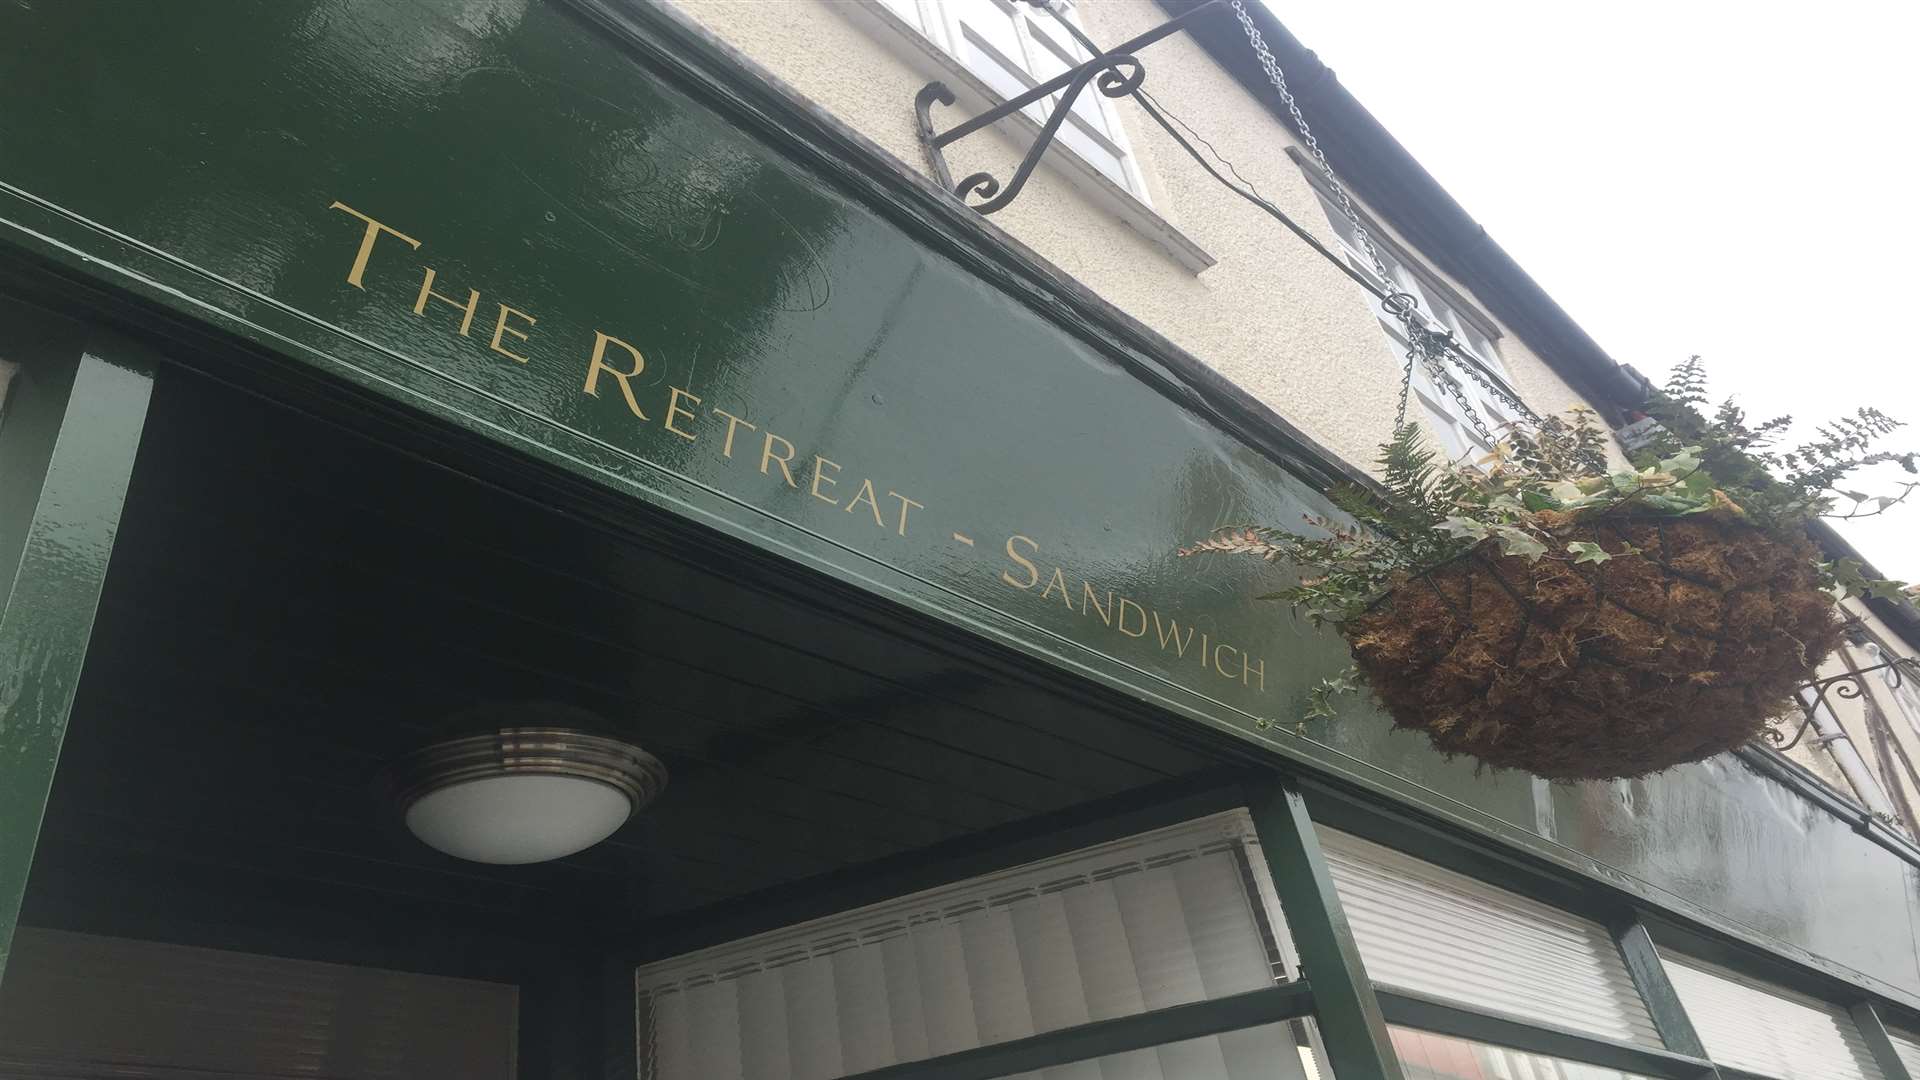 The Retreat - Sandwich